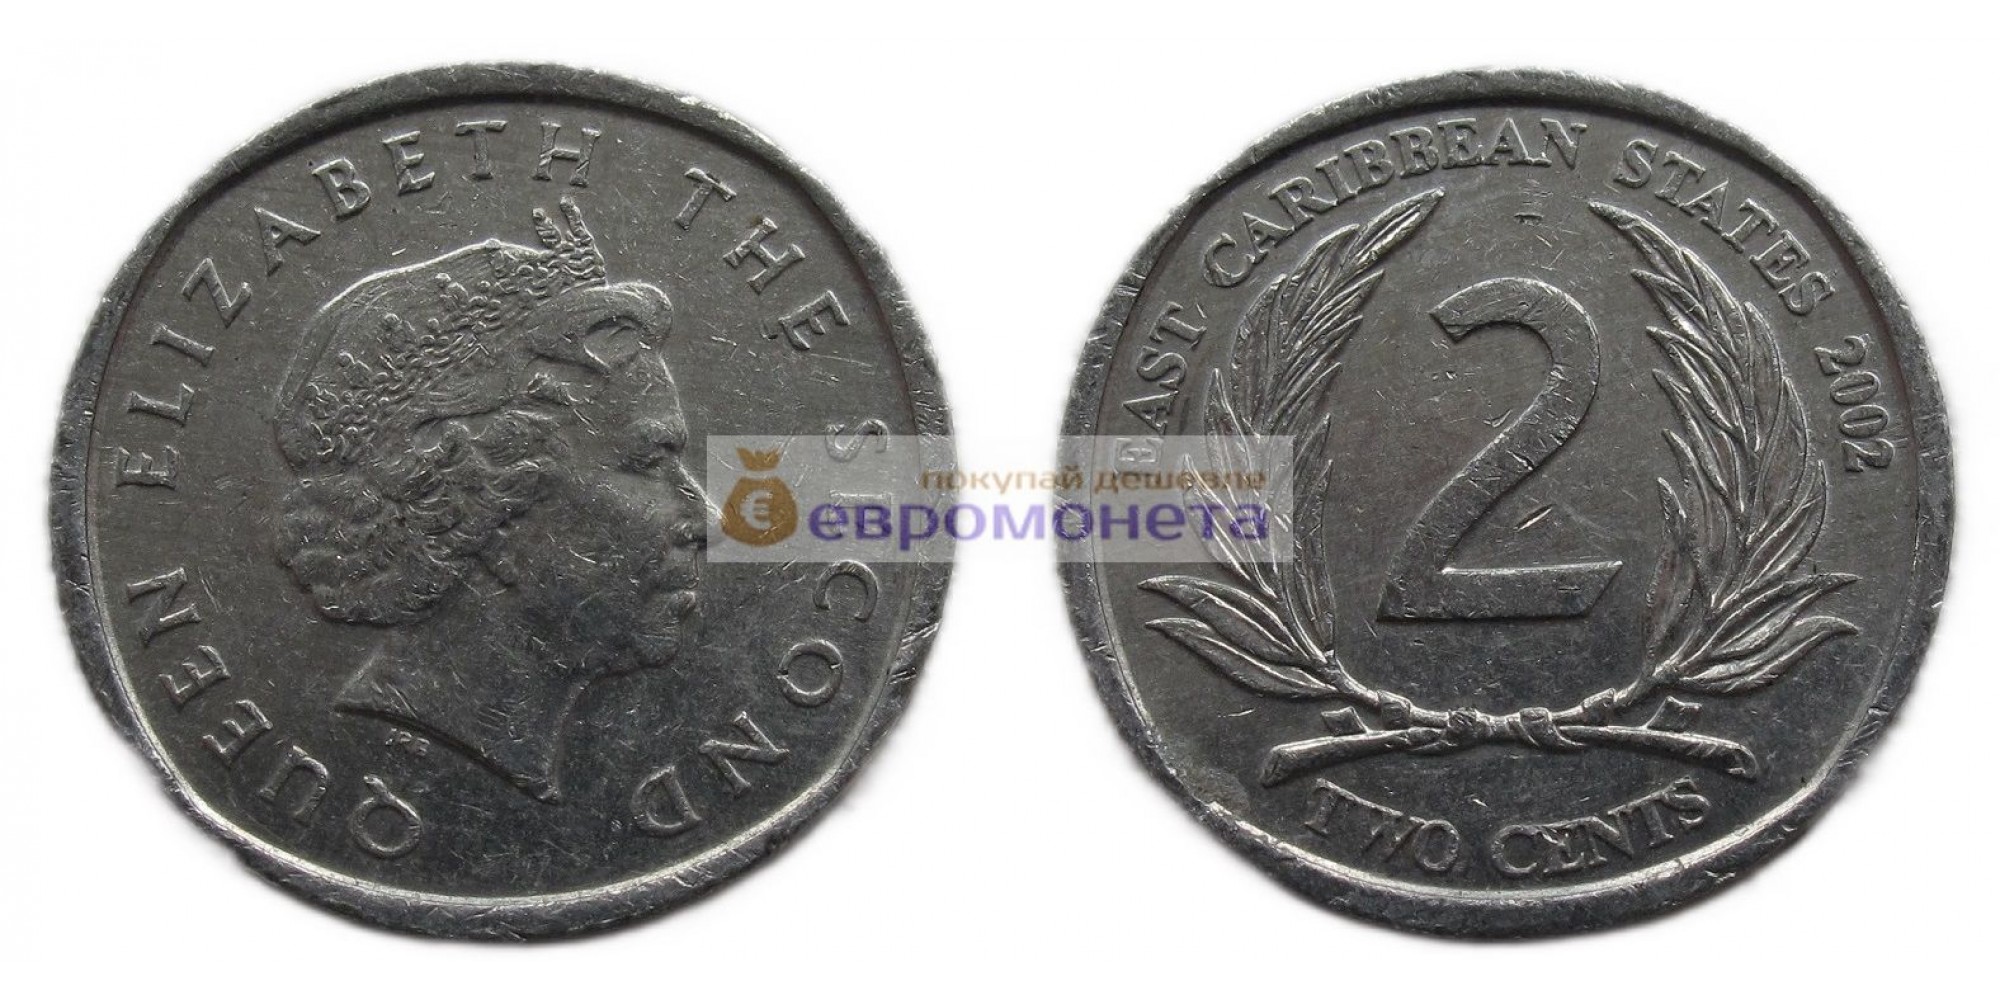 Восточные Карибы 2 цента 2002 год. Королева Елизавета II